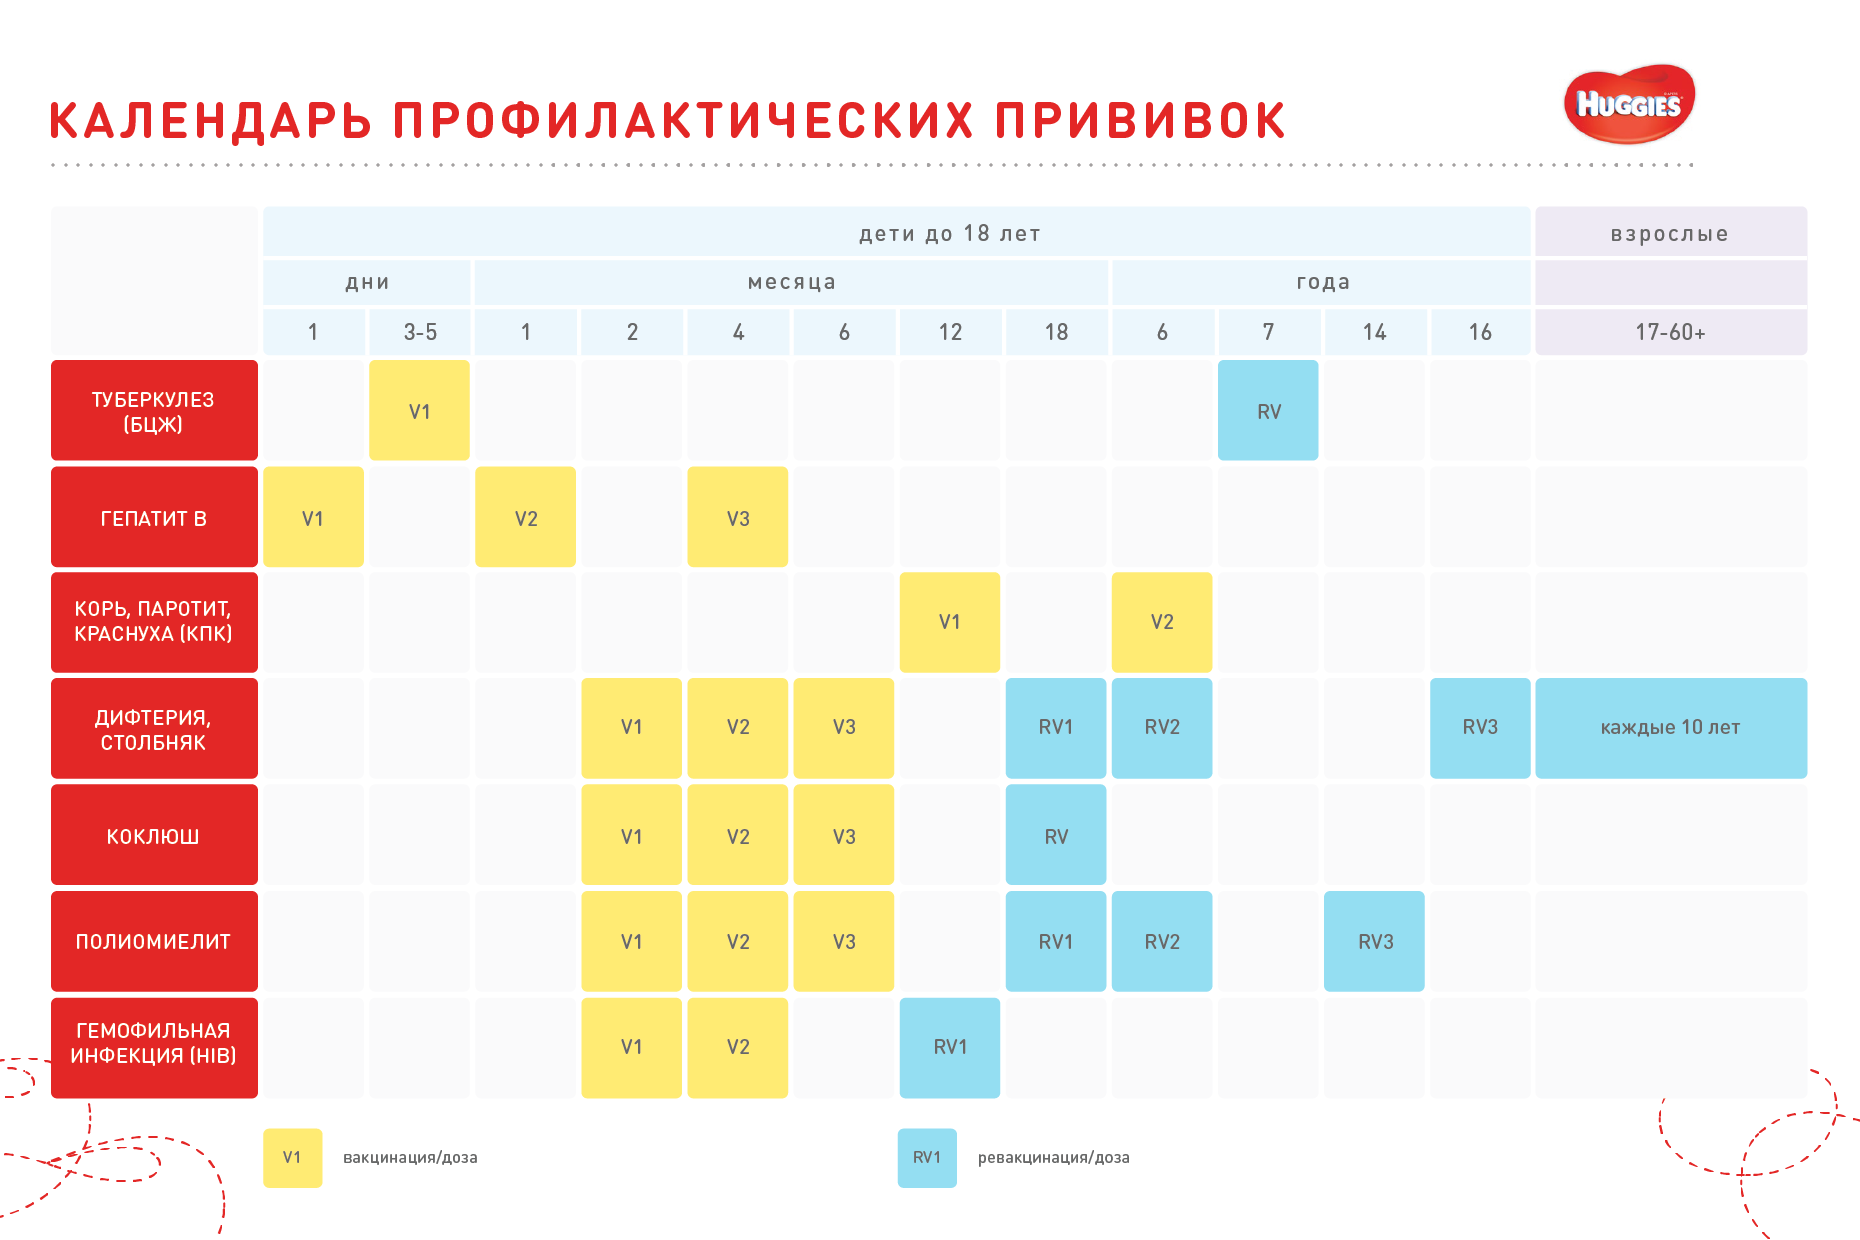 Календарь прививок для детей в Украине